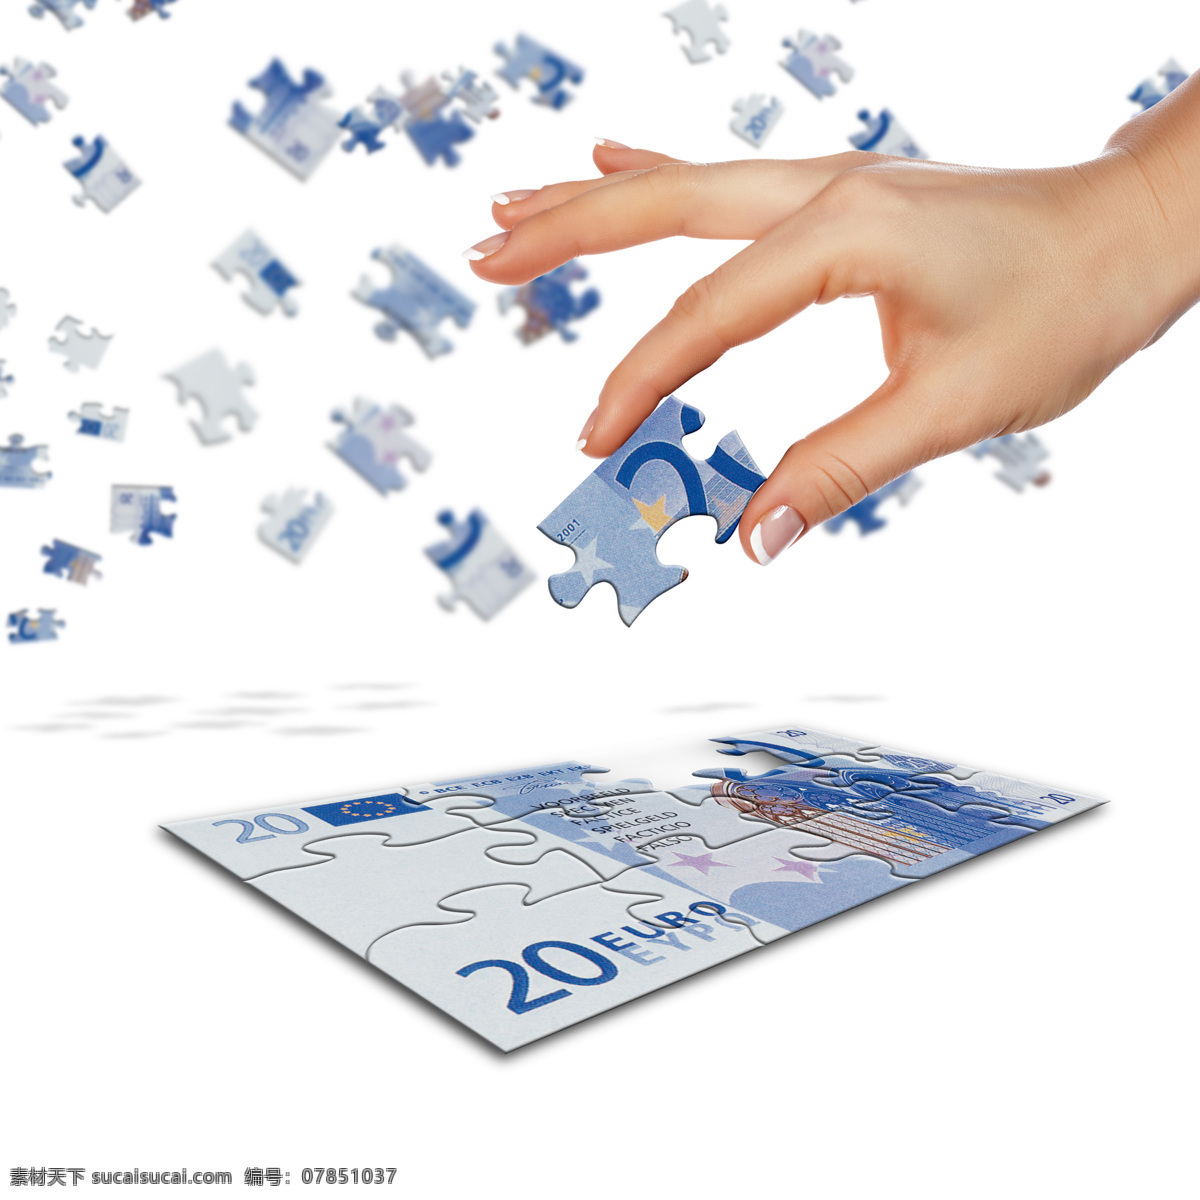 欧元 拼图 手部 特写 拿着 手势 手型 欧元拼图 玩具 金融 商业 智力拼图 高清图片 金融货币 商务金融